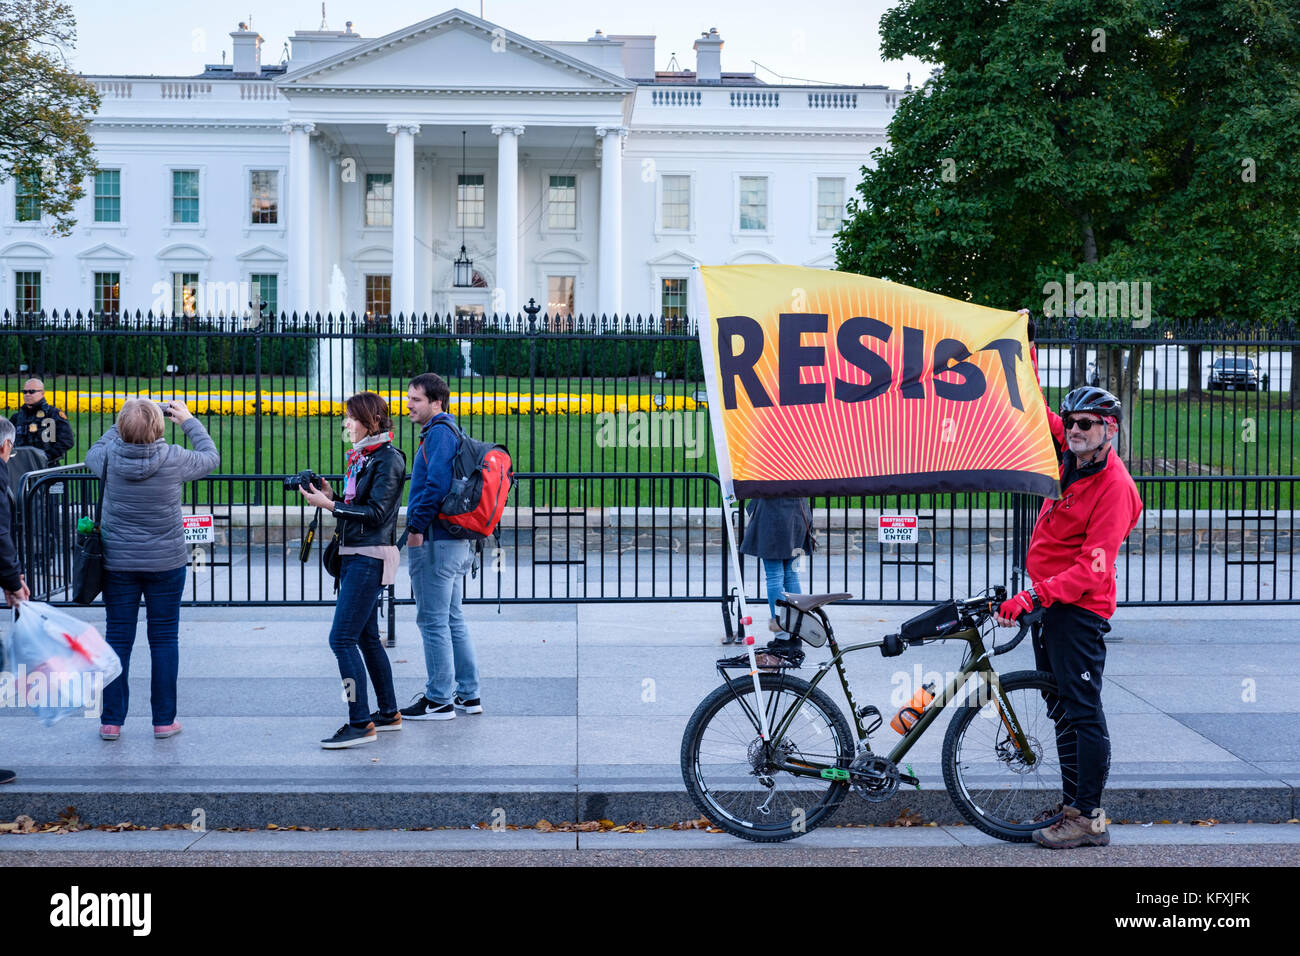 Resistenza Anti-Trump protester davanti alla Casa Bianca tenendo un banner di resist/flag, per protestare contro il presidente Trump, Washington, DC, Stati Uniti d'America. Foto Stock